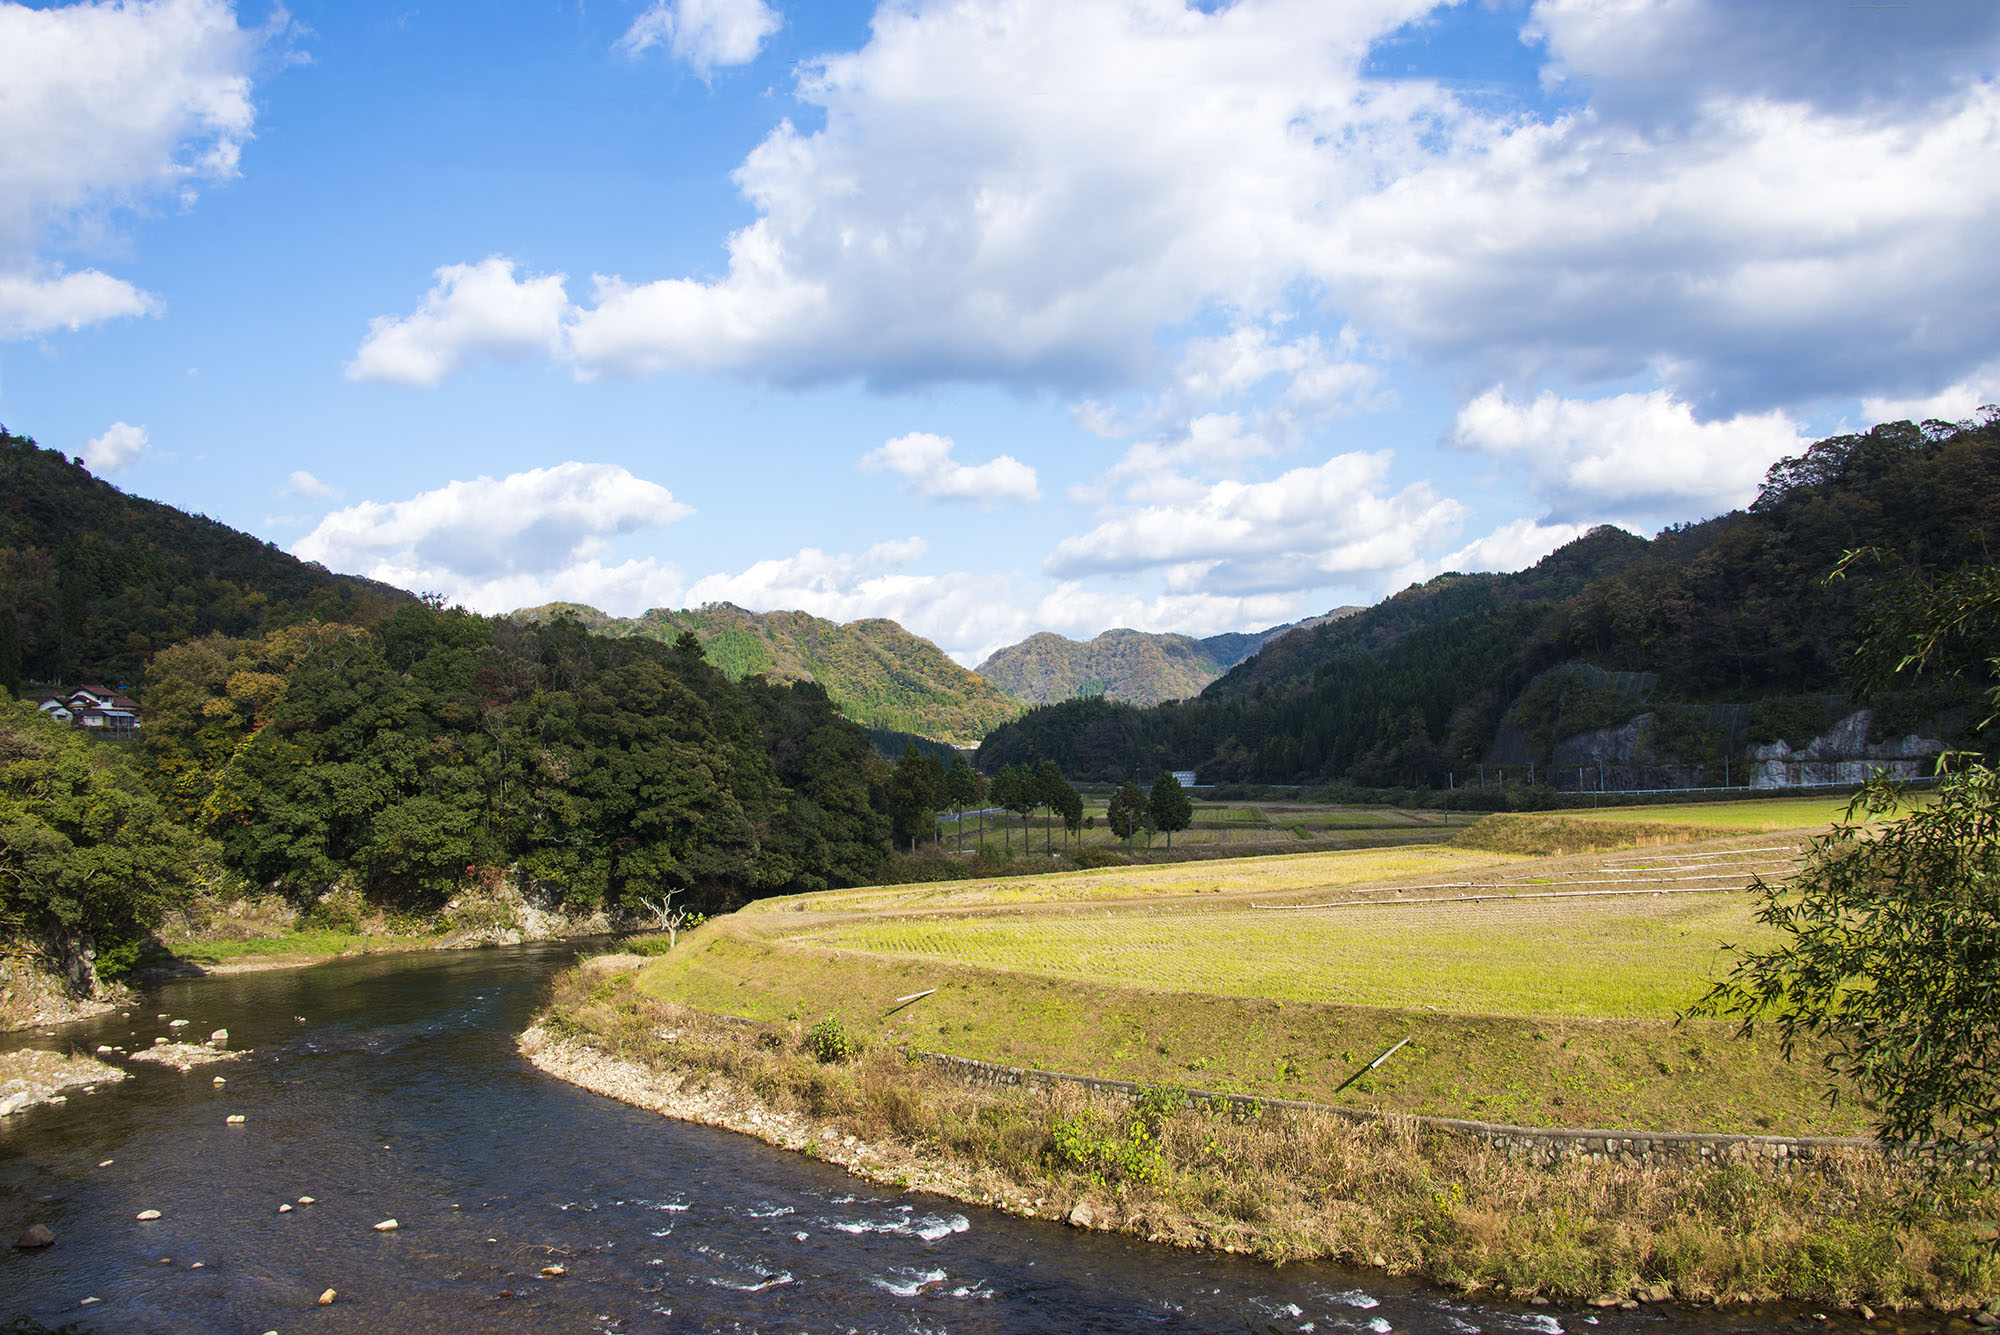 日本の風景写真7 田舎風景 14年11月撮影 フリー写真素材 カフィネット